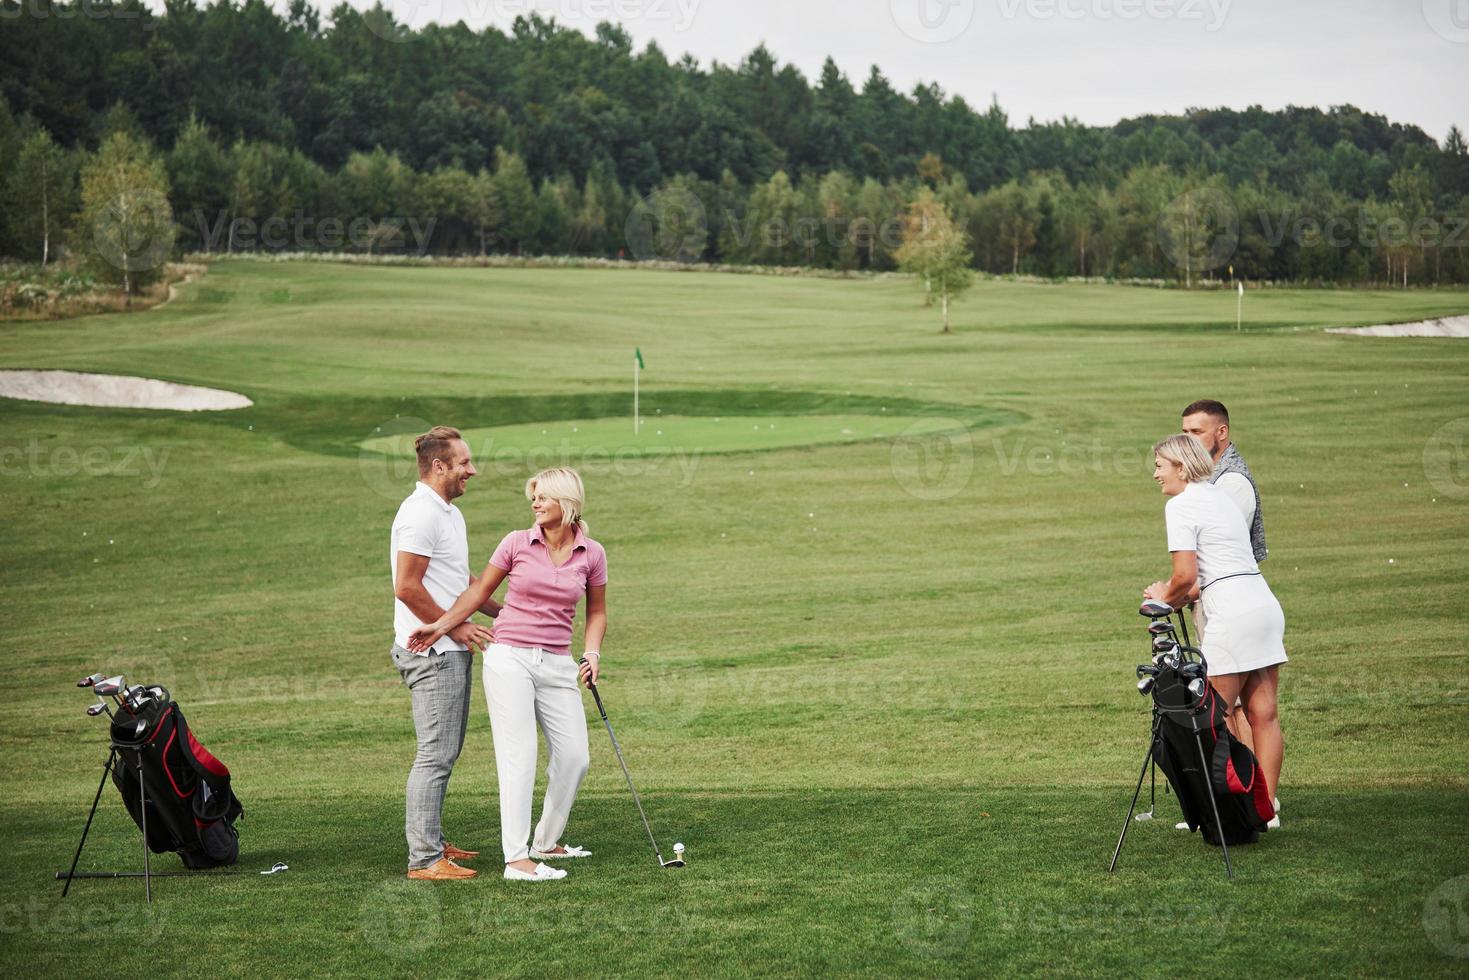 groupe d'amis élégants sur le terrain de golf apprennent à jouer à un nouveau jeu photo